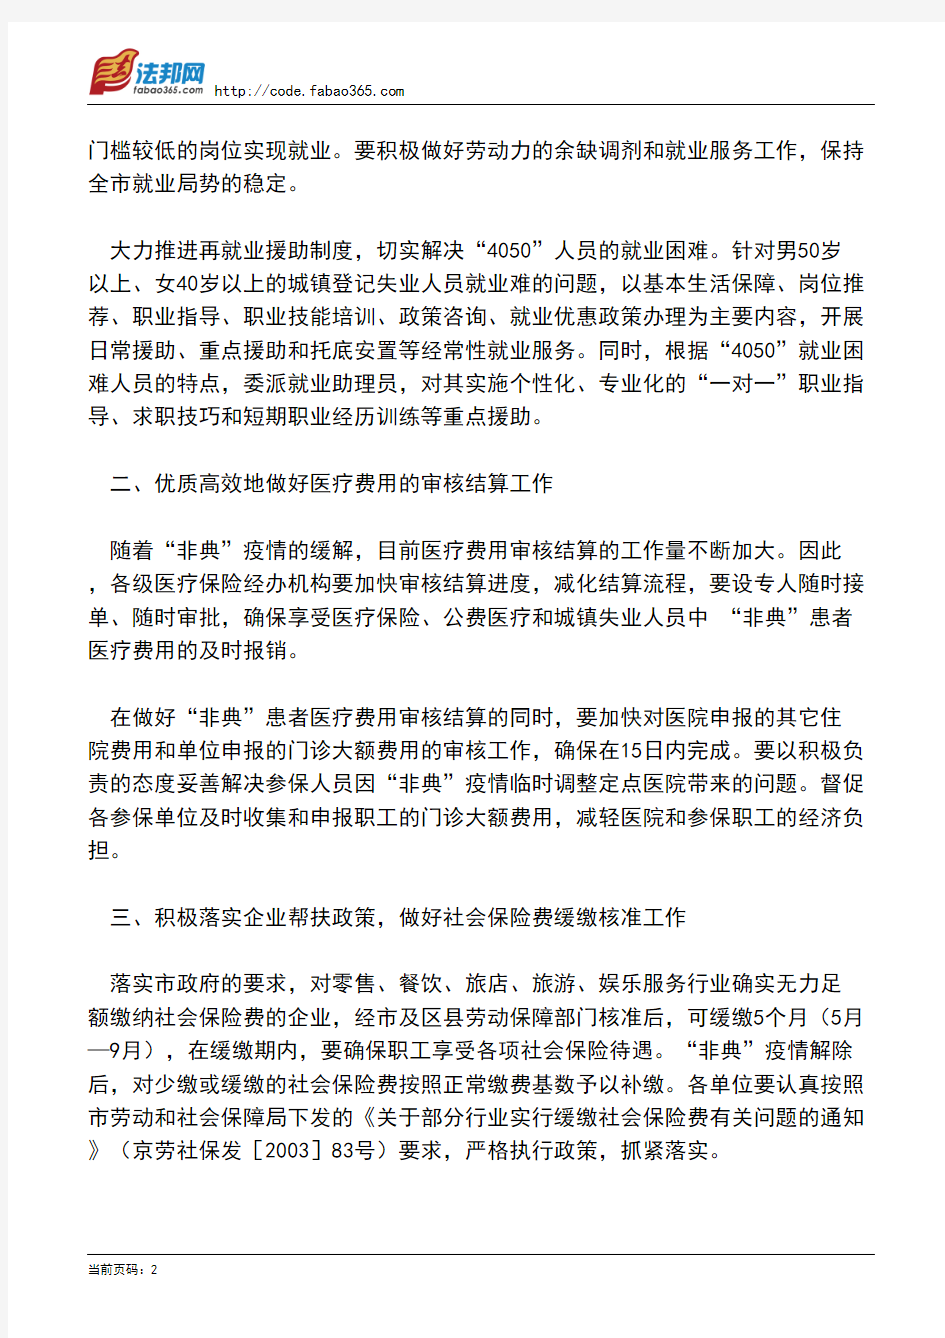 北京市劳动和社会保障局关于做好近期劳动保障几项重点工作的通知